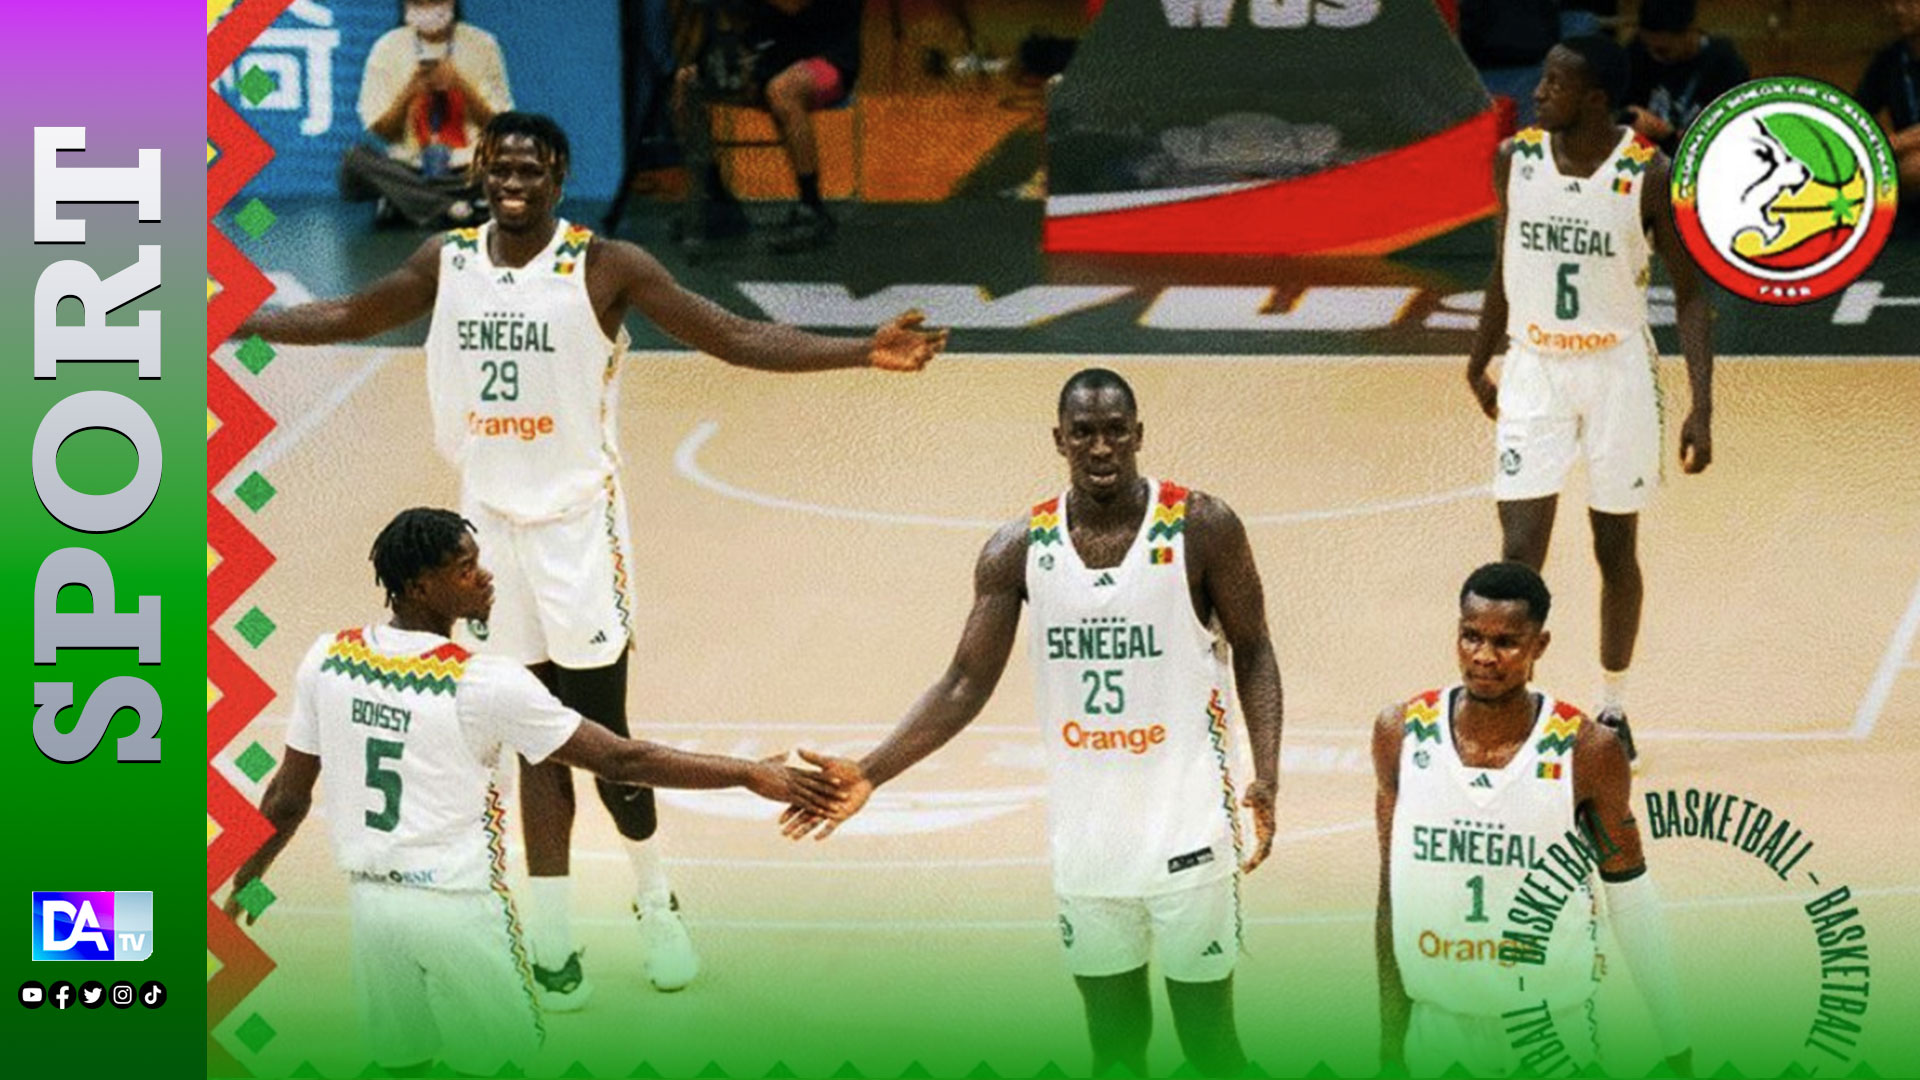 Tableau d'entraînement de basket-ball de Senegal